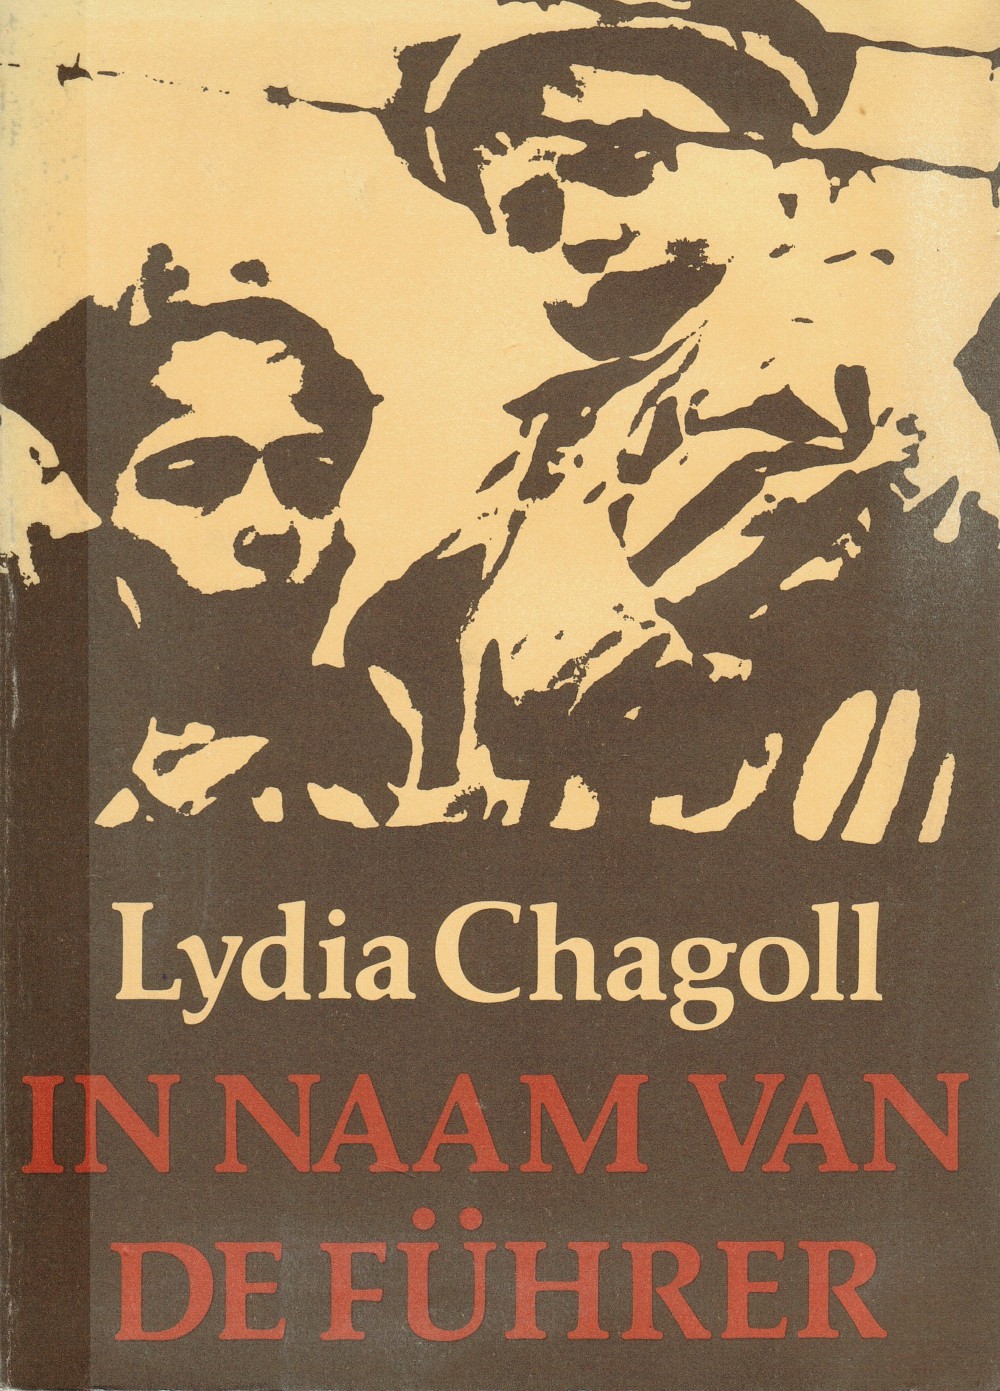 Chagoll, Lydia - In naam van de Fhrer